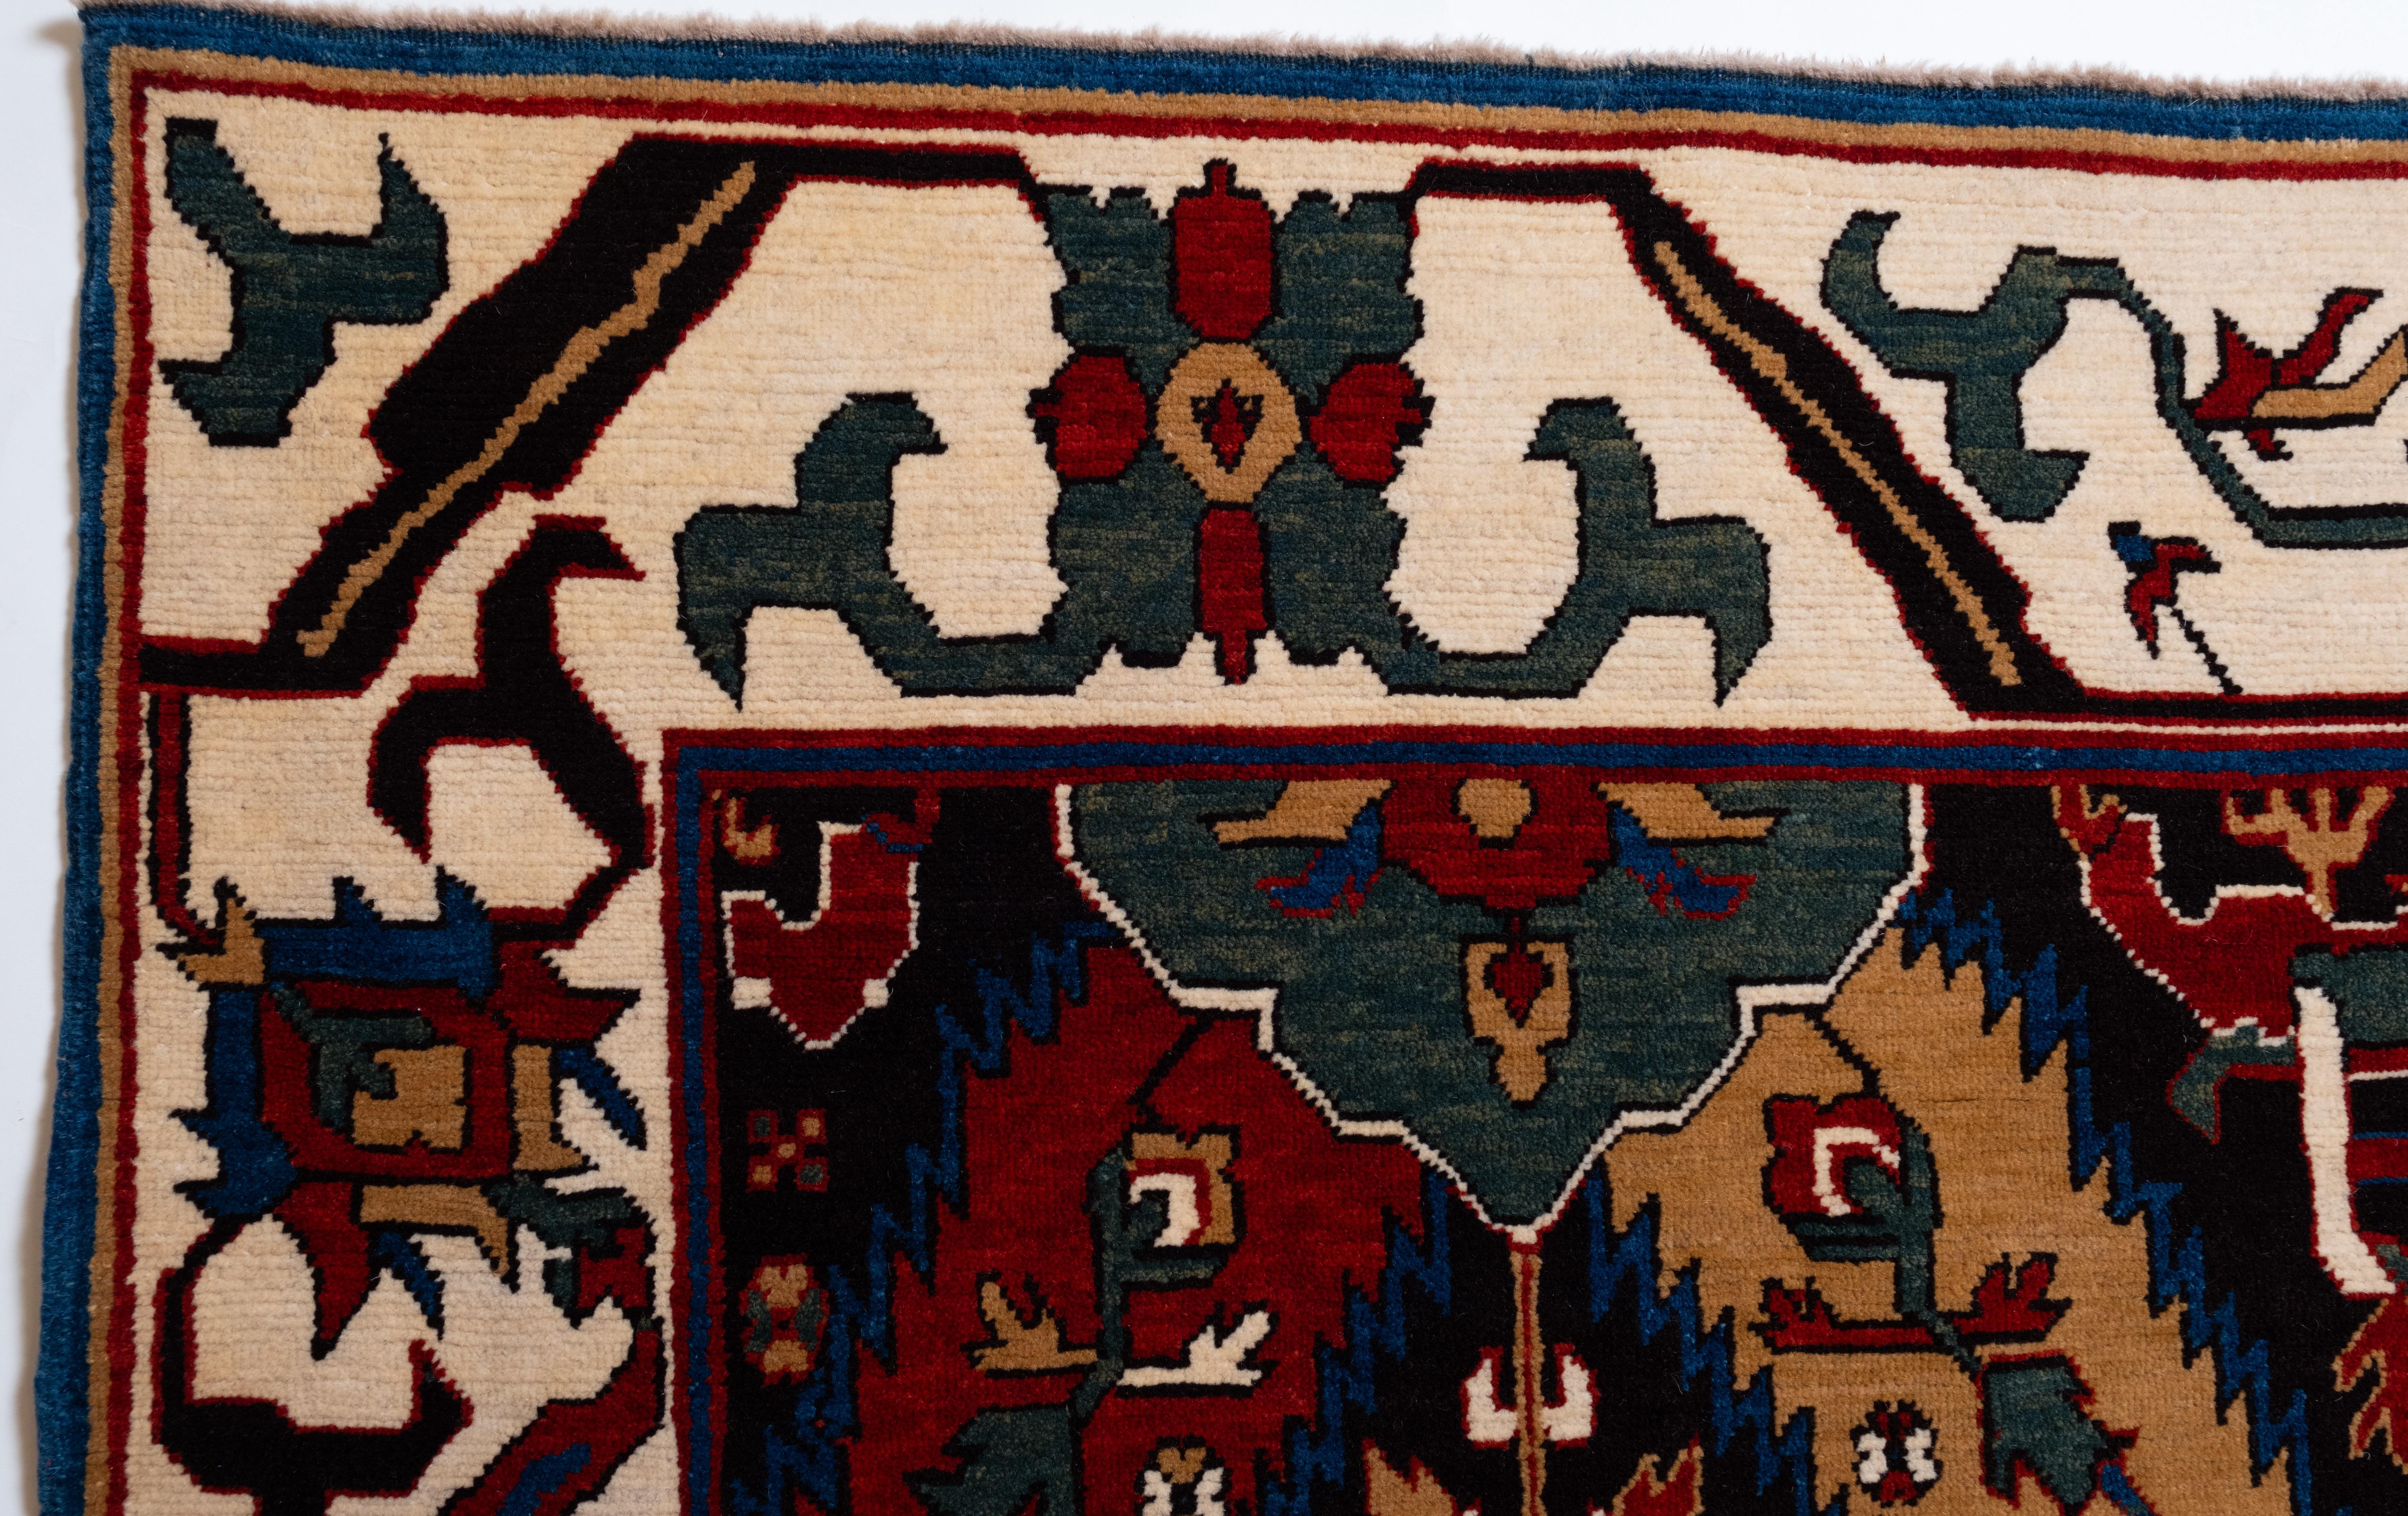 La source du tapis provient du livre Caucasian Carpets, E. Gans-Reudin, Thames and Hudson, Suisse 1986, pg.37. Cette œuvre luxueuse et variée est connue sous le nom de 